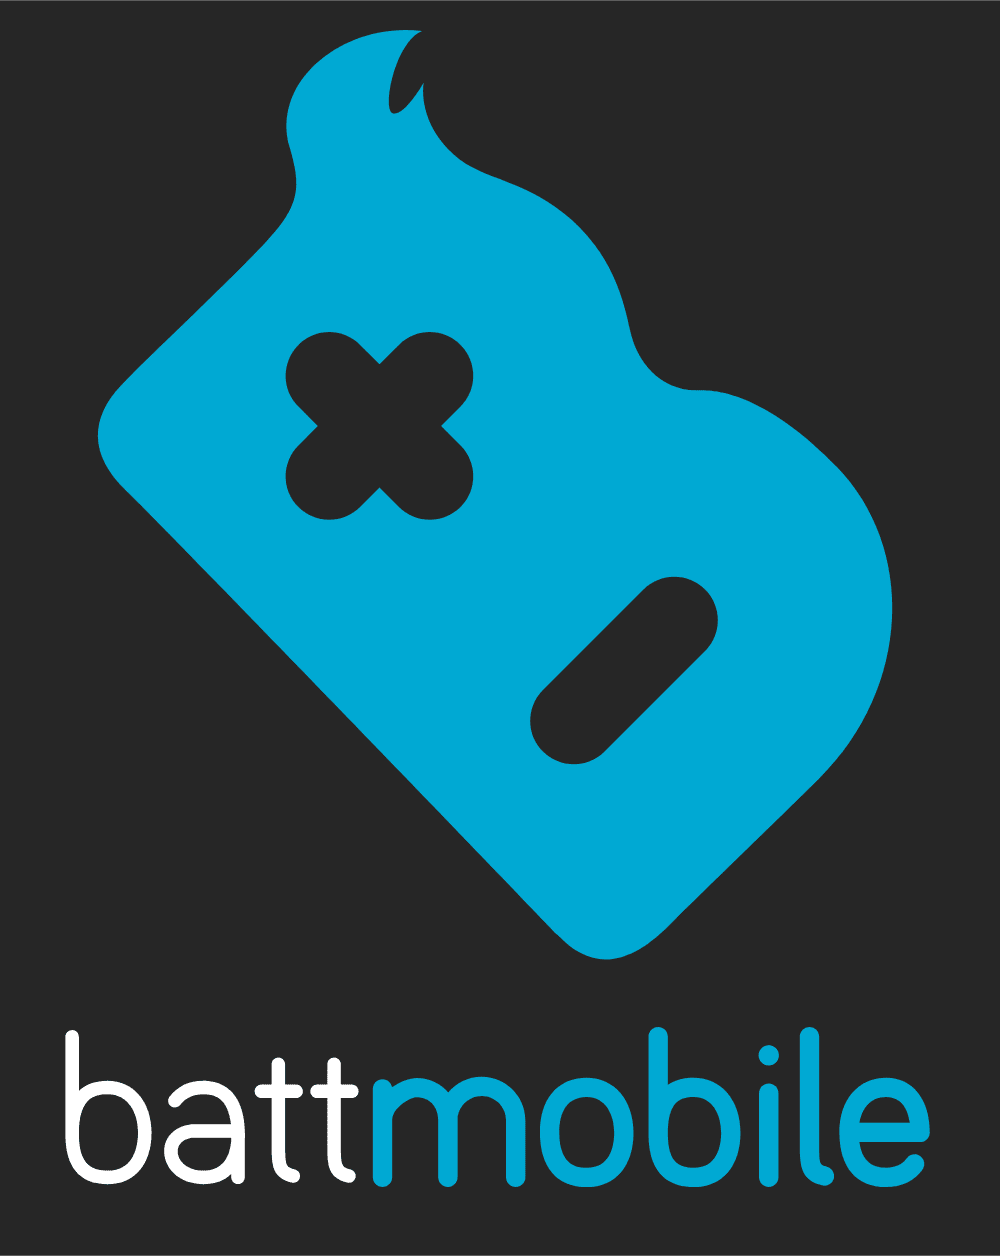 Battmobile Logo download